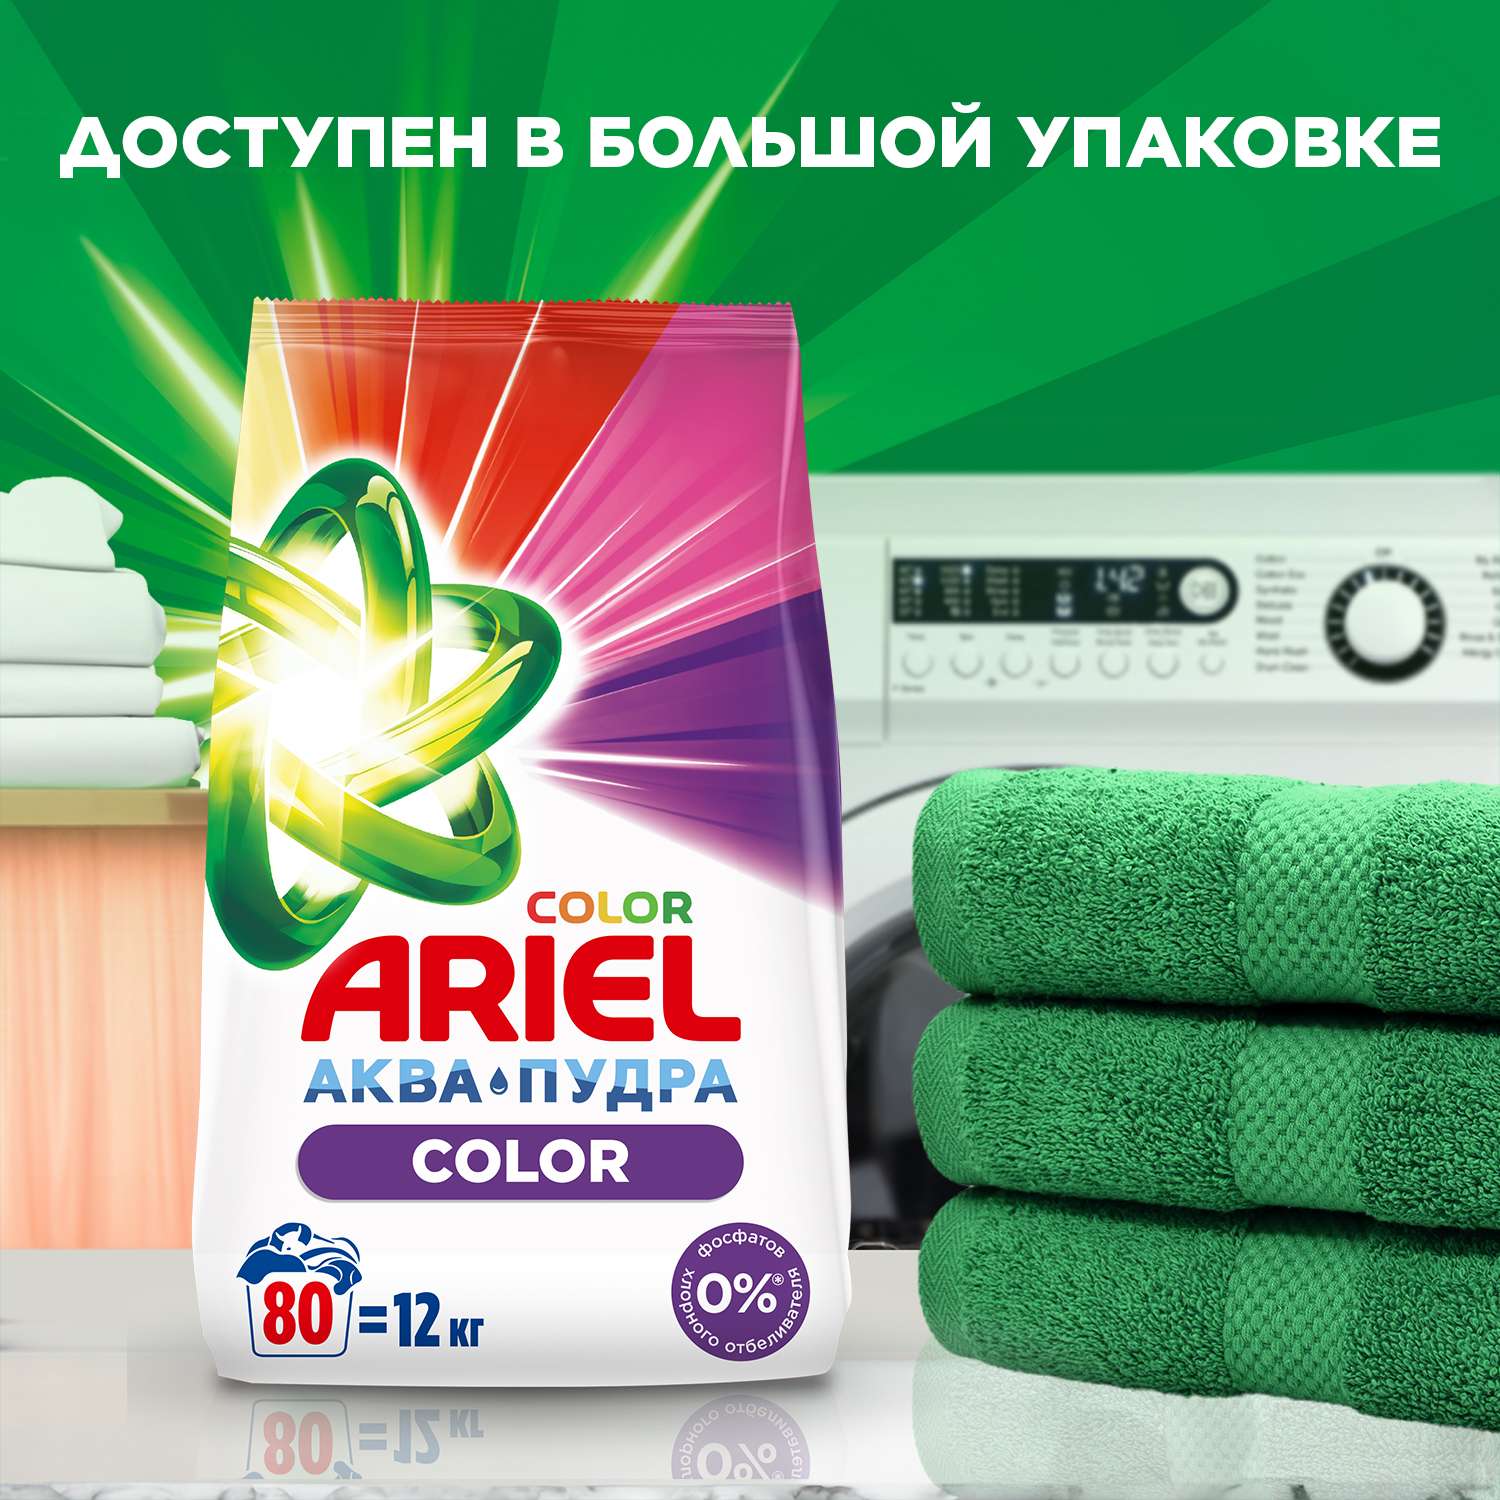 Порошок стиральный Ariel Автомат Color 3кг - фото 10